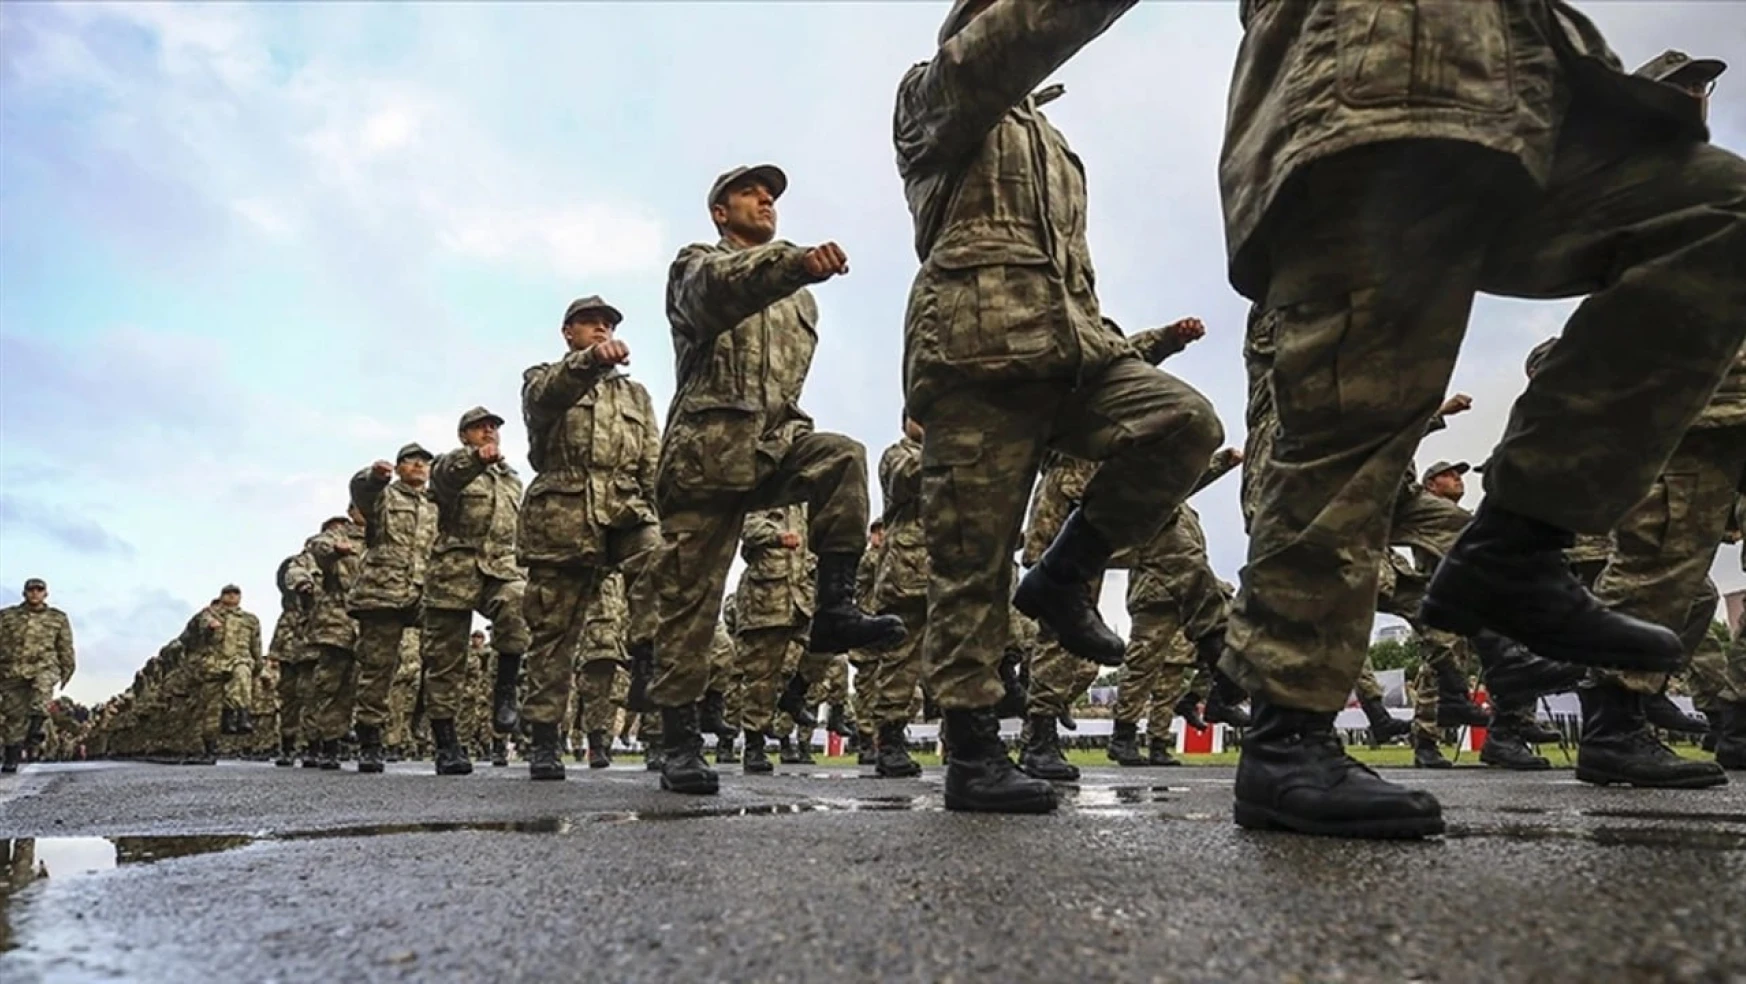 Milli Savunma Bakanlığı, bedelli askerlik sınıflandırma sonuçlarının açıklandığını duyurdu.